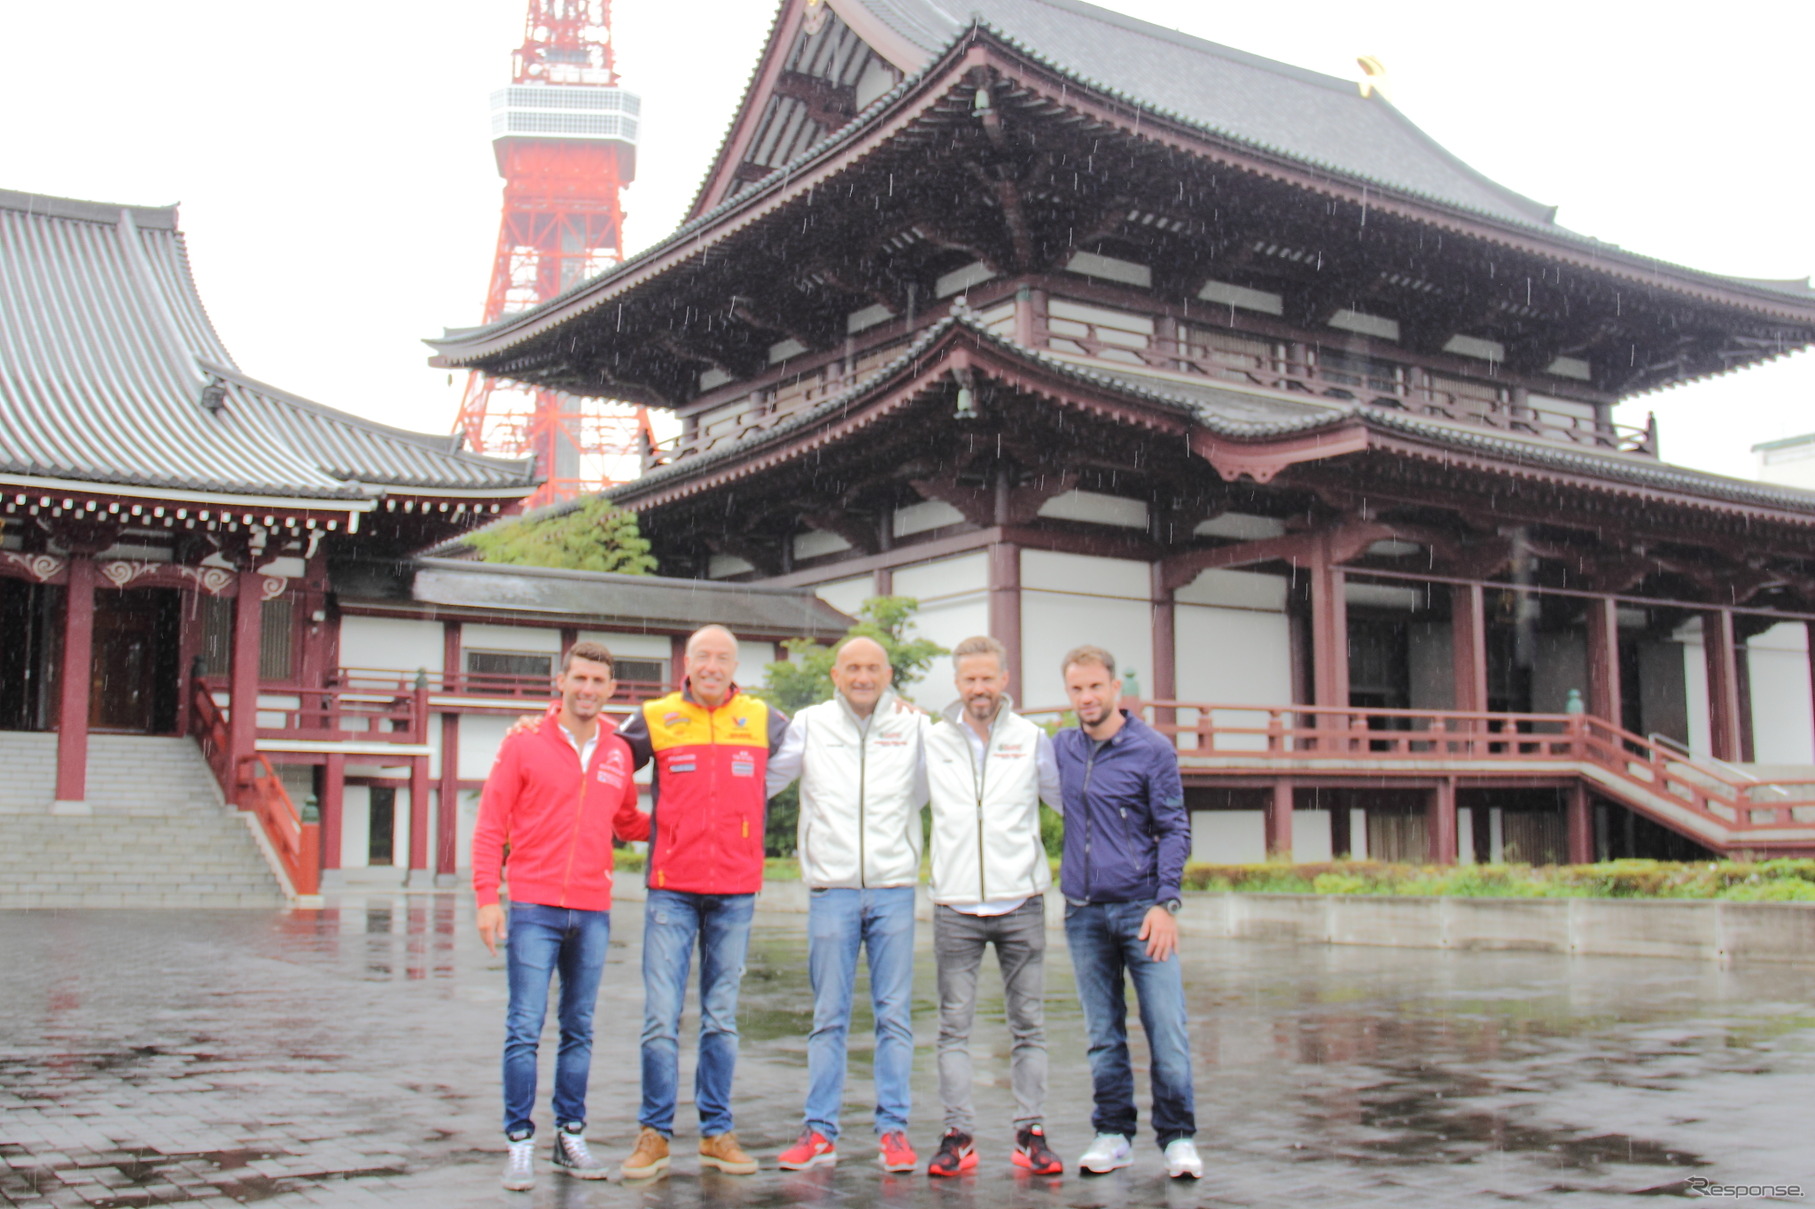 日本ラウンド開幕前にロペス、コロネル、タルクィーニ、モンテイロ、ラピエールが増上寺を訪問